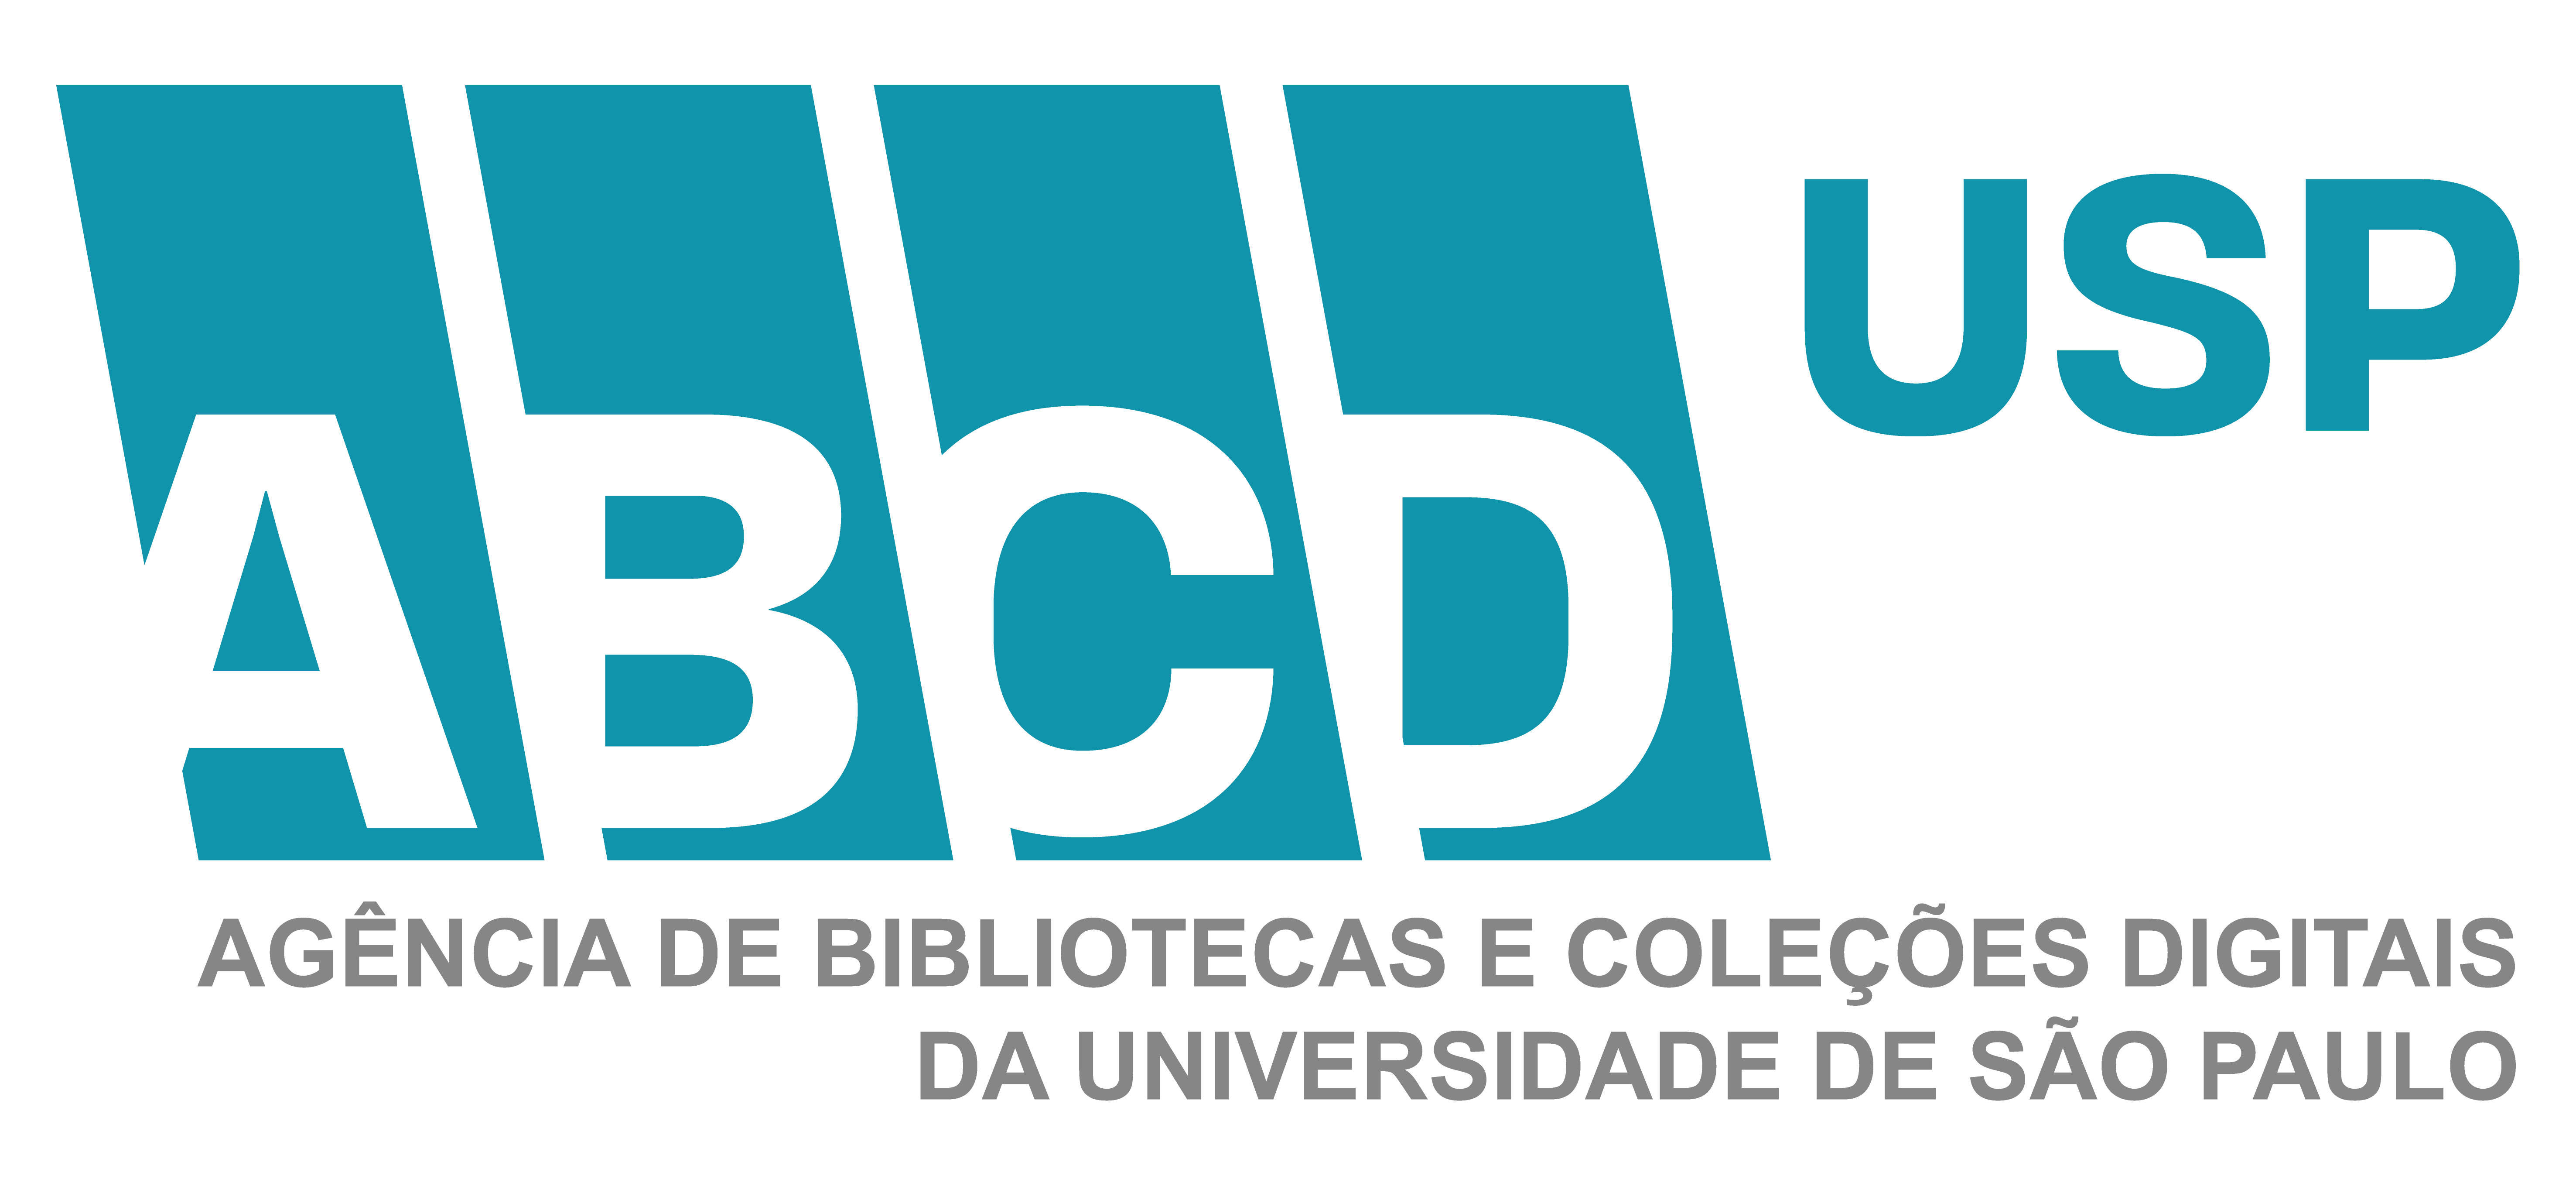 logo cor abcd